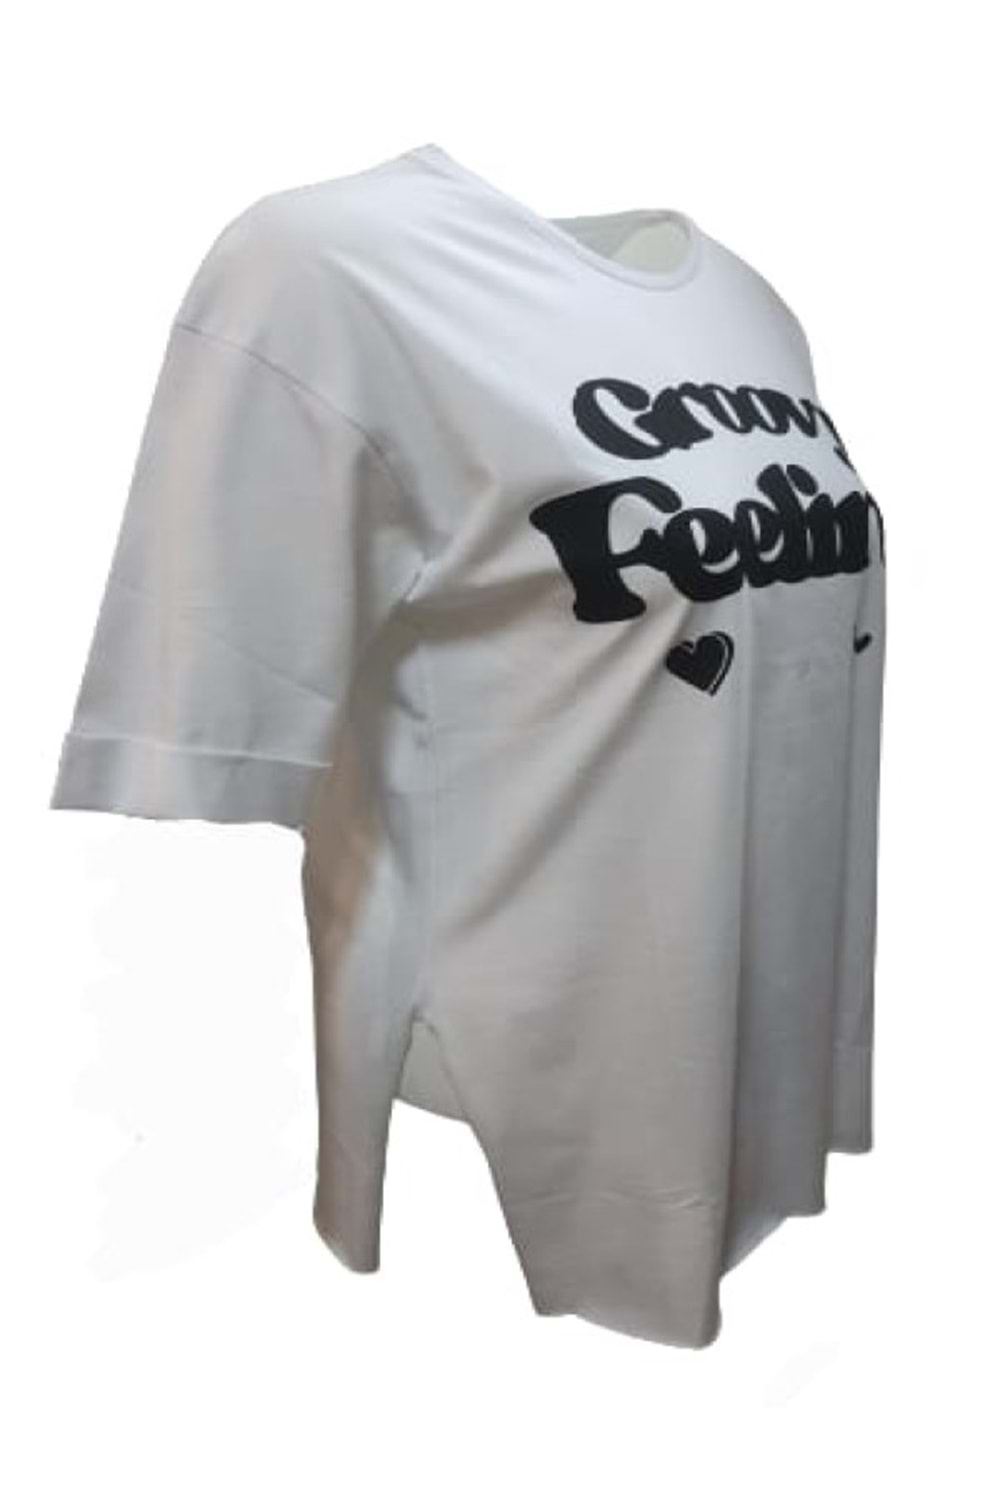 Kuzey Kadın Baskılı Yırtmaçlı Oversize Kadın T-shirt 3095 - Beyaz - S